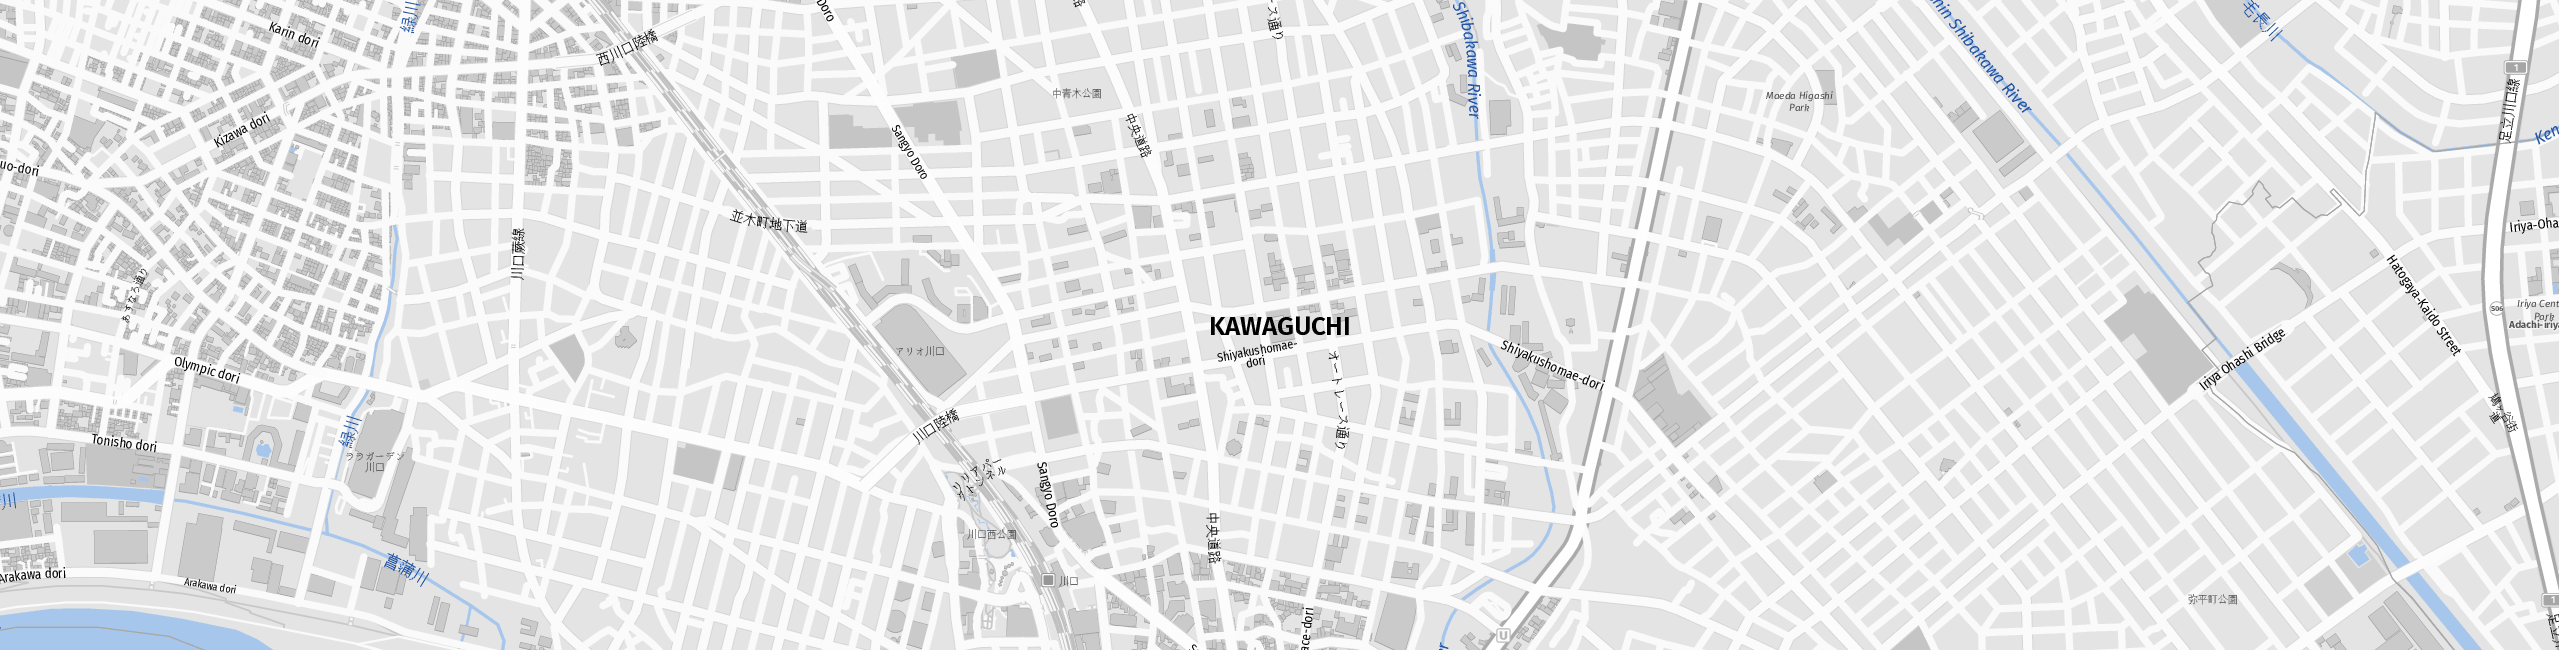 Stadtplan Kawaguchi zum Downloaden.